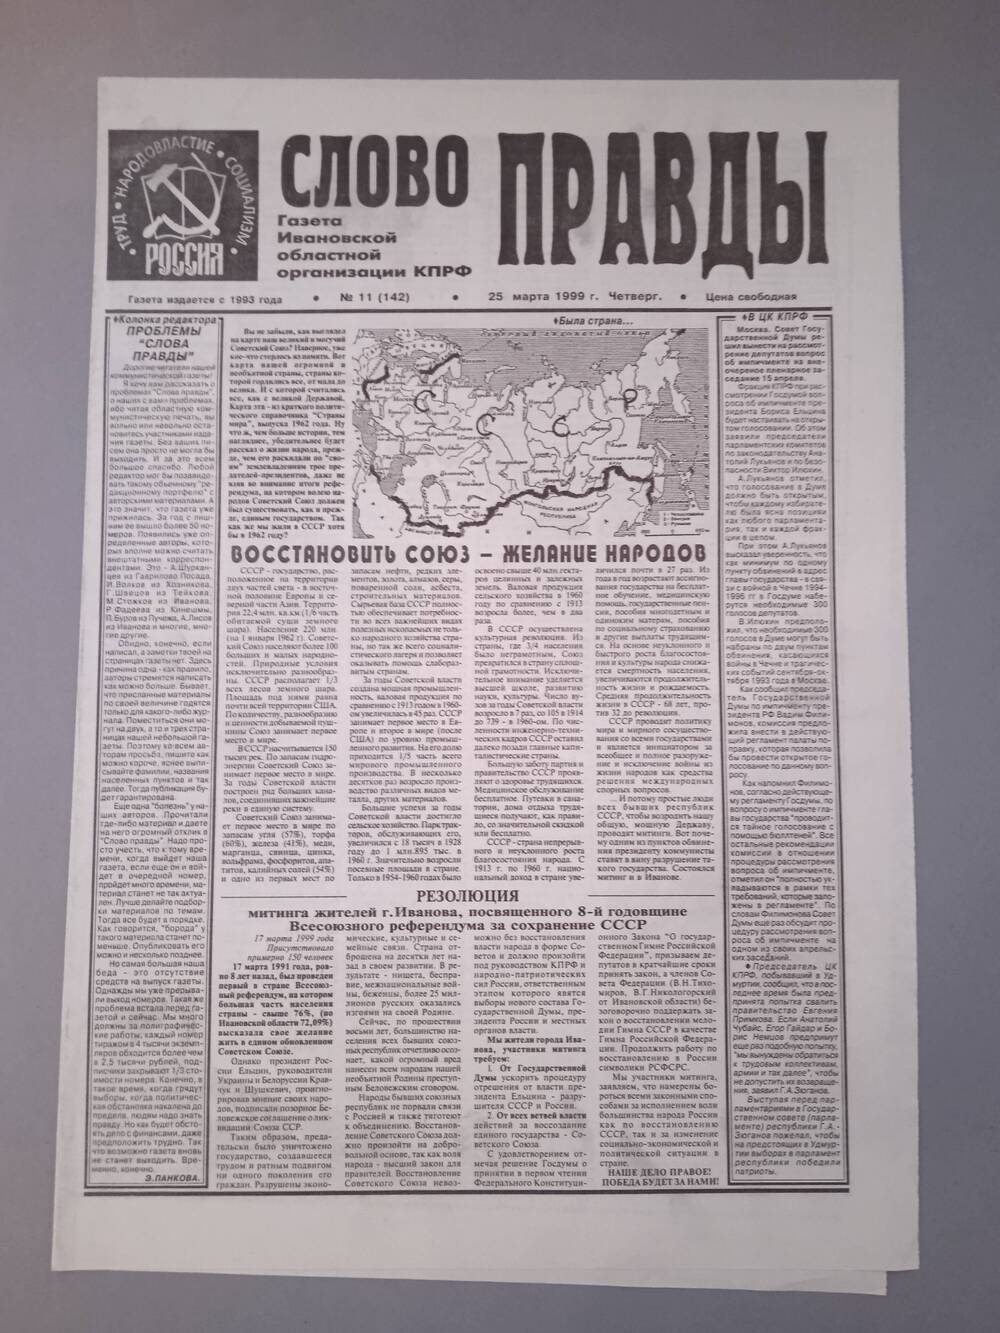 Газета «Слово Правды» № 11 от 25 марта 1999 г. изд-е Ивановской обл. организации КПРФ.